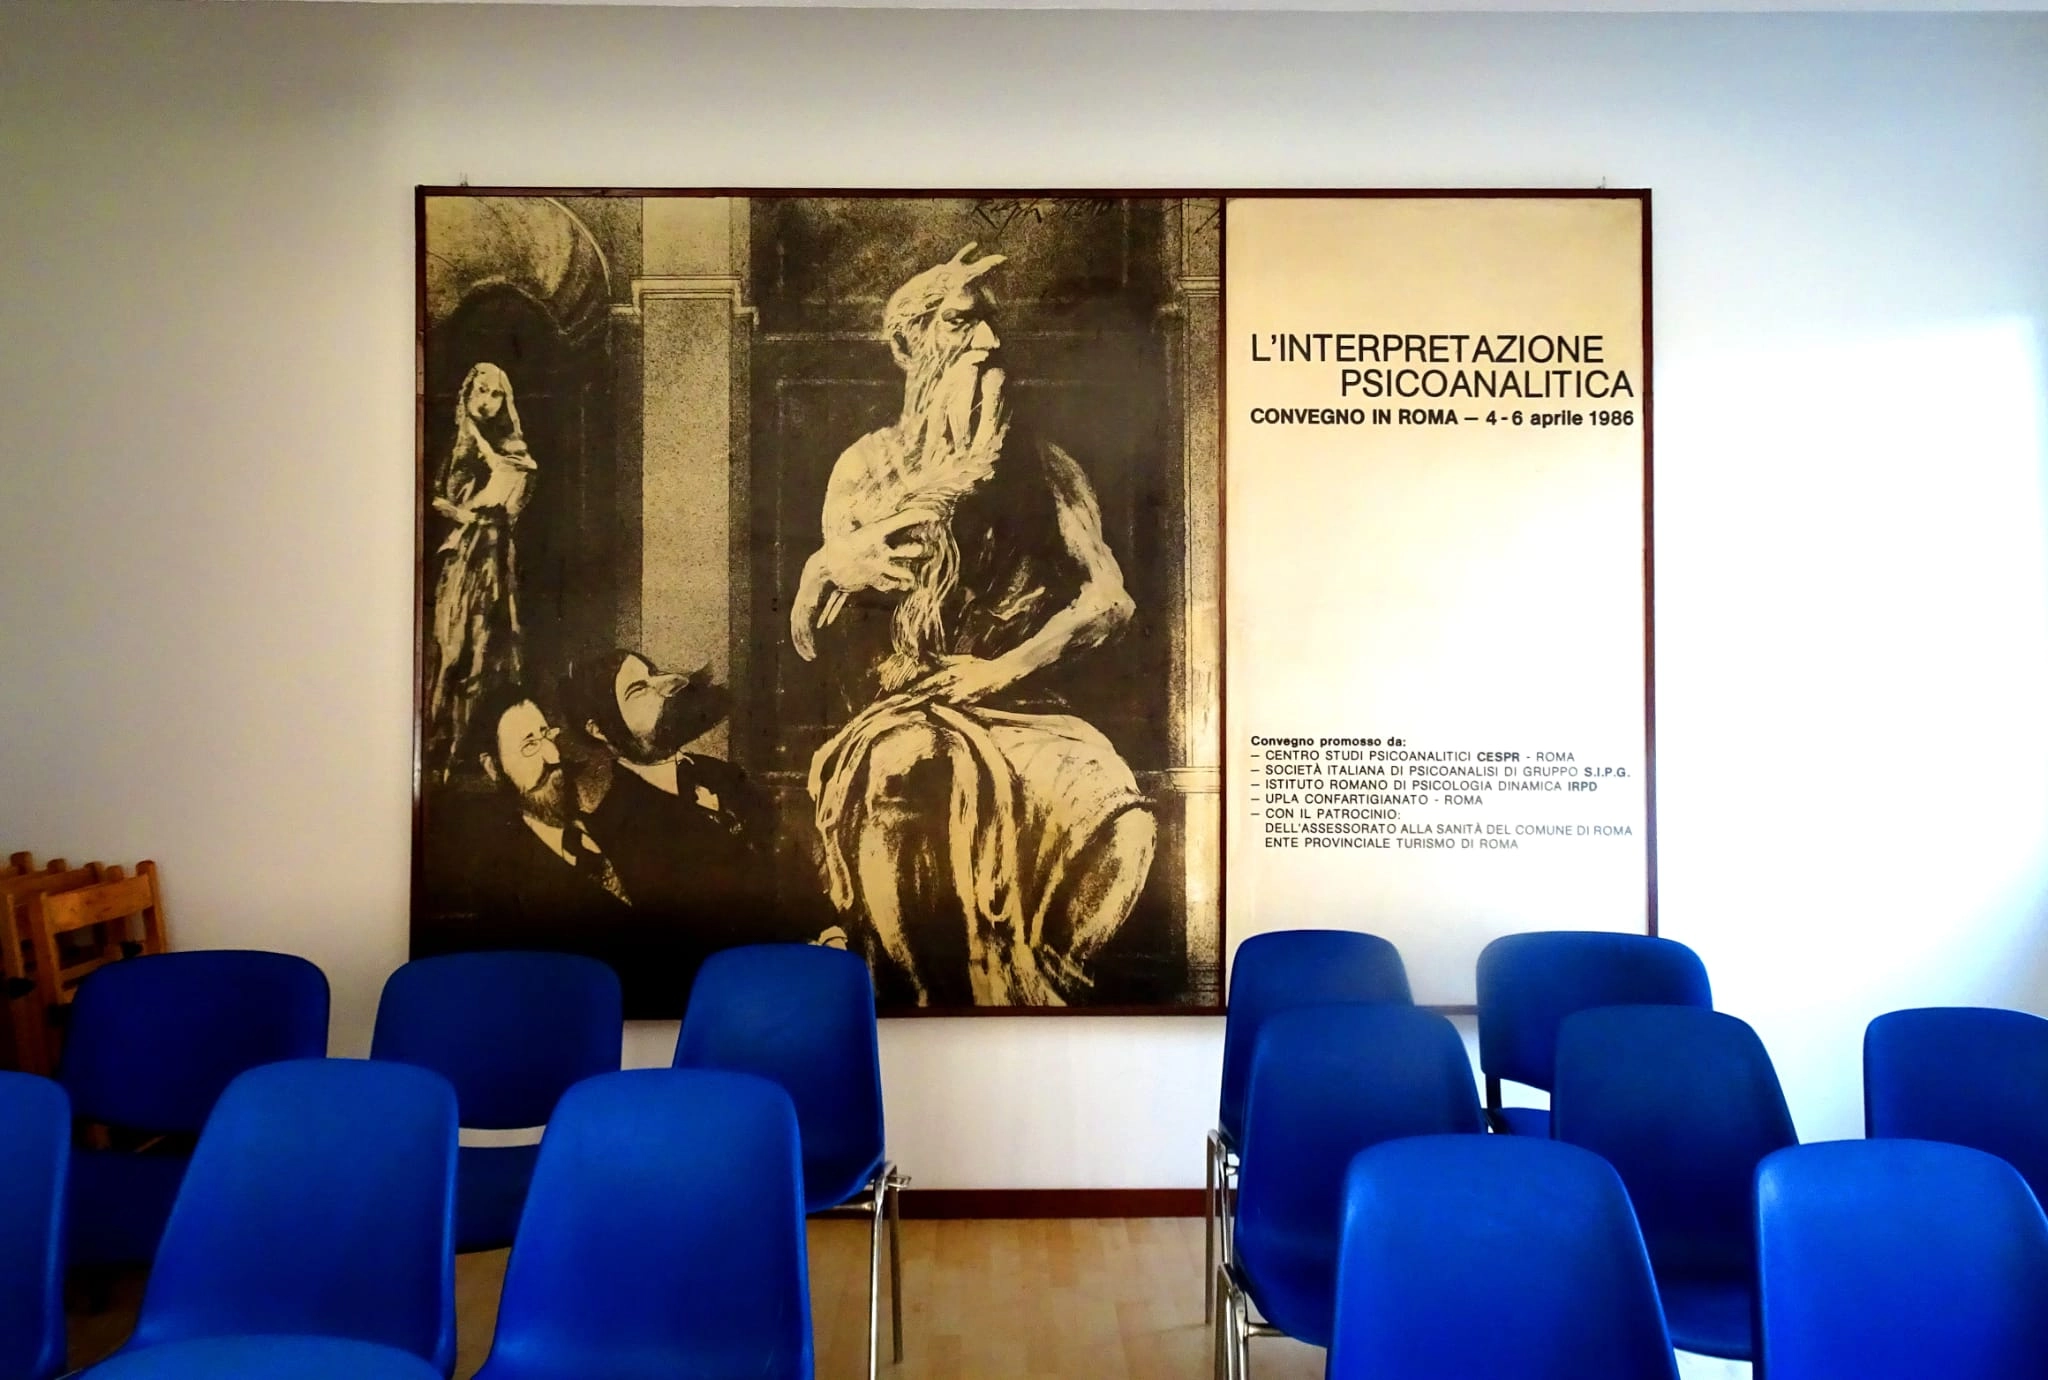 Foto 3 - “Lo Spazio Psicoanalitico” - 50 anni tra Psicoanalisi tra Arte, Scienza e Società.